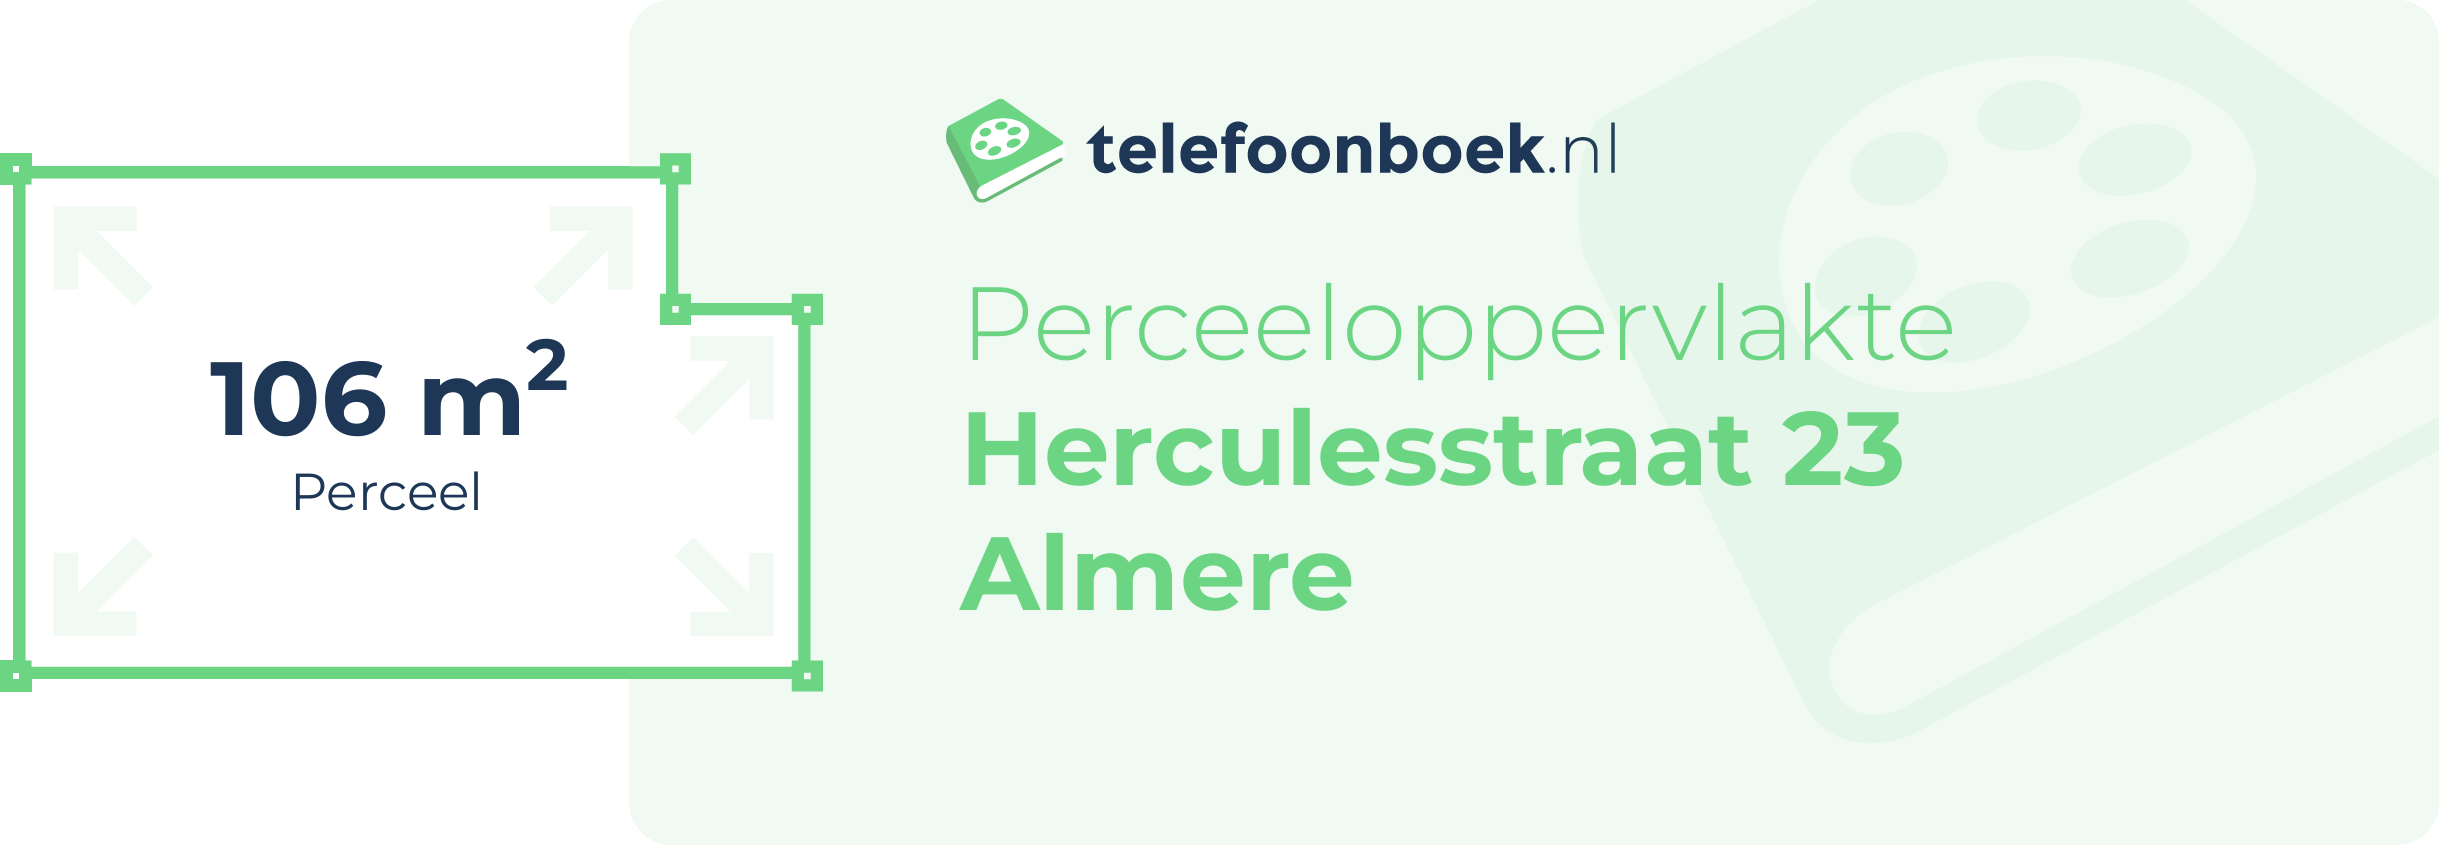 Perceeloppervlakte Herculesstraat 23 Almere